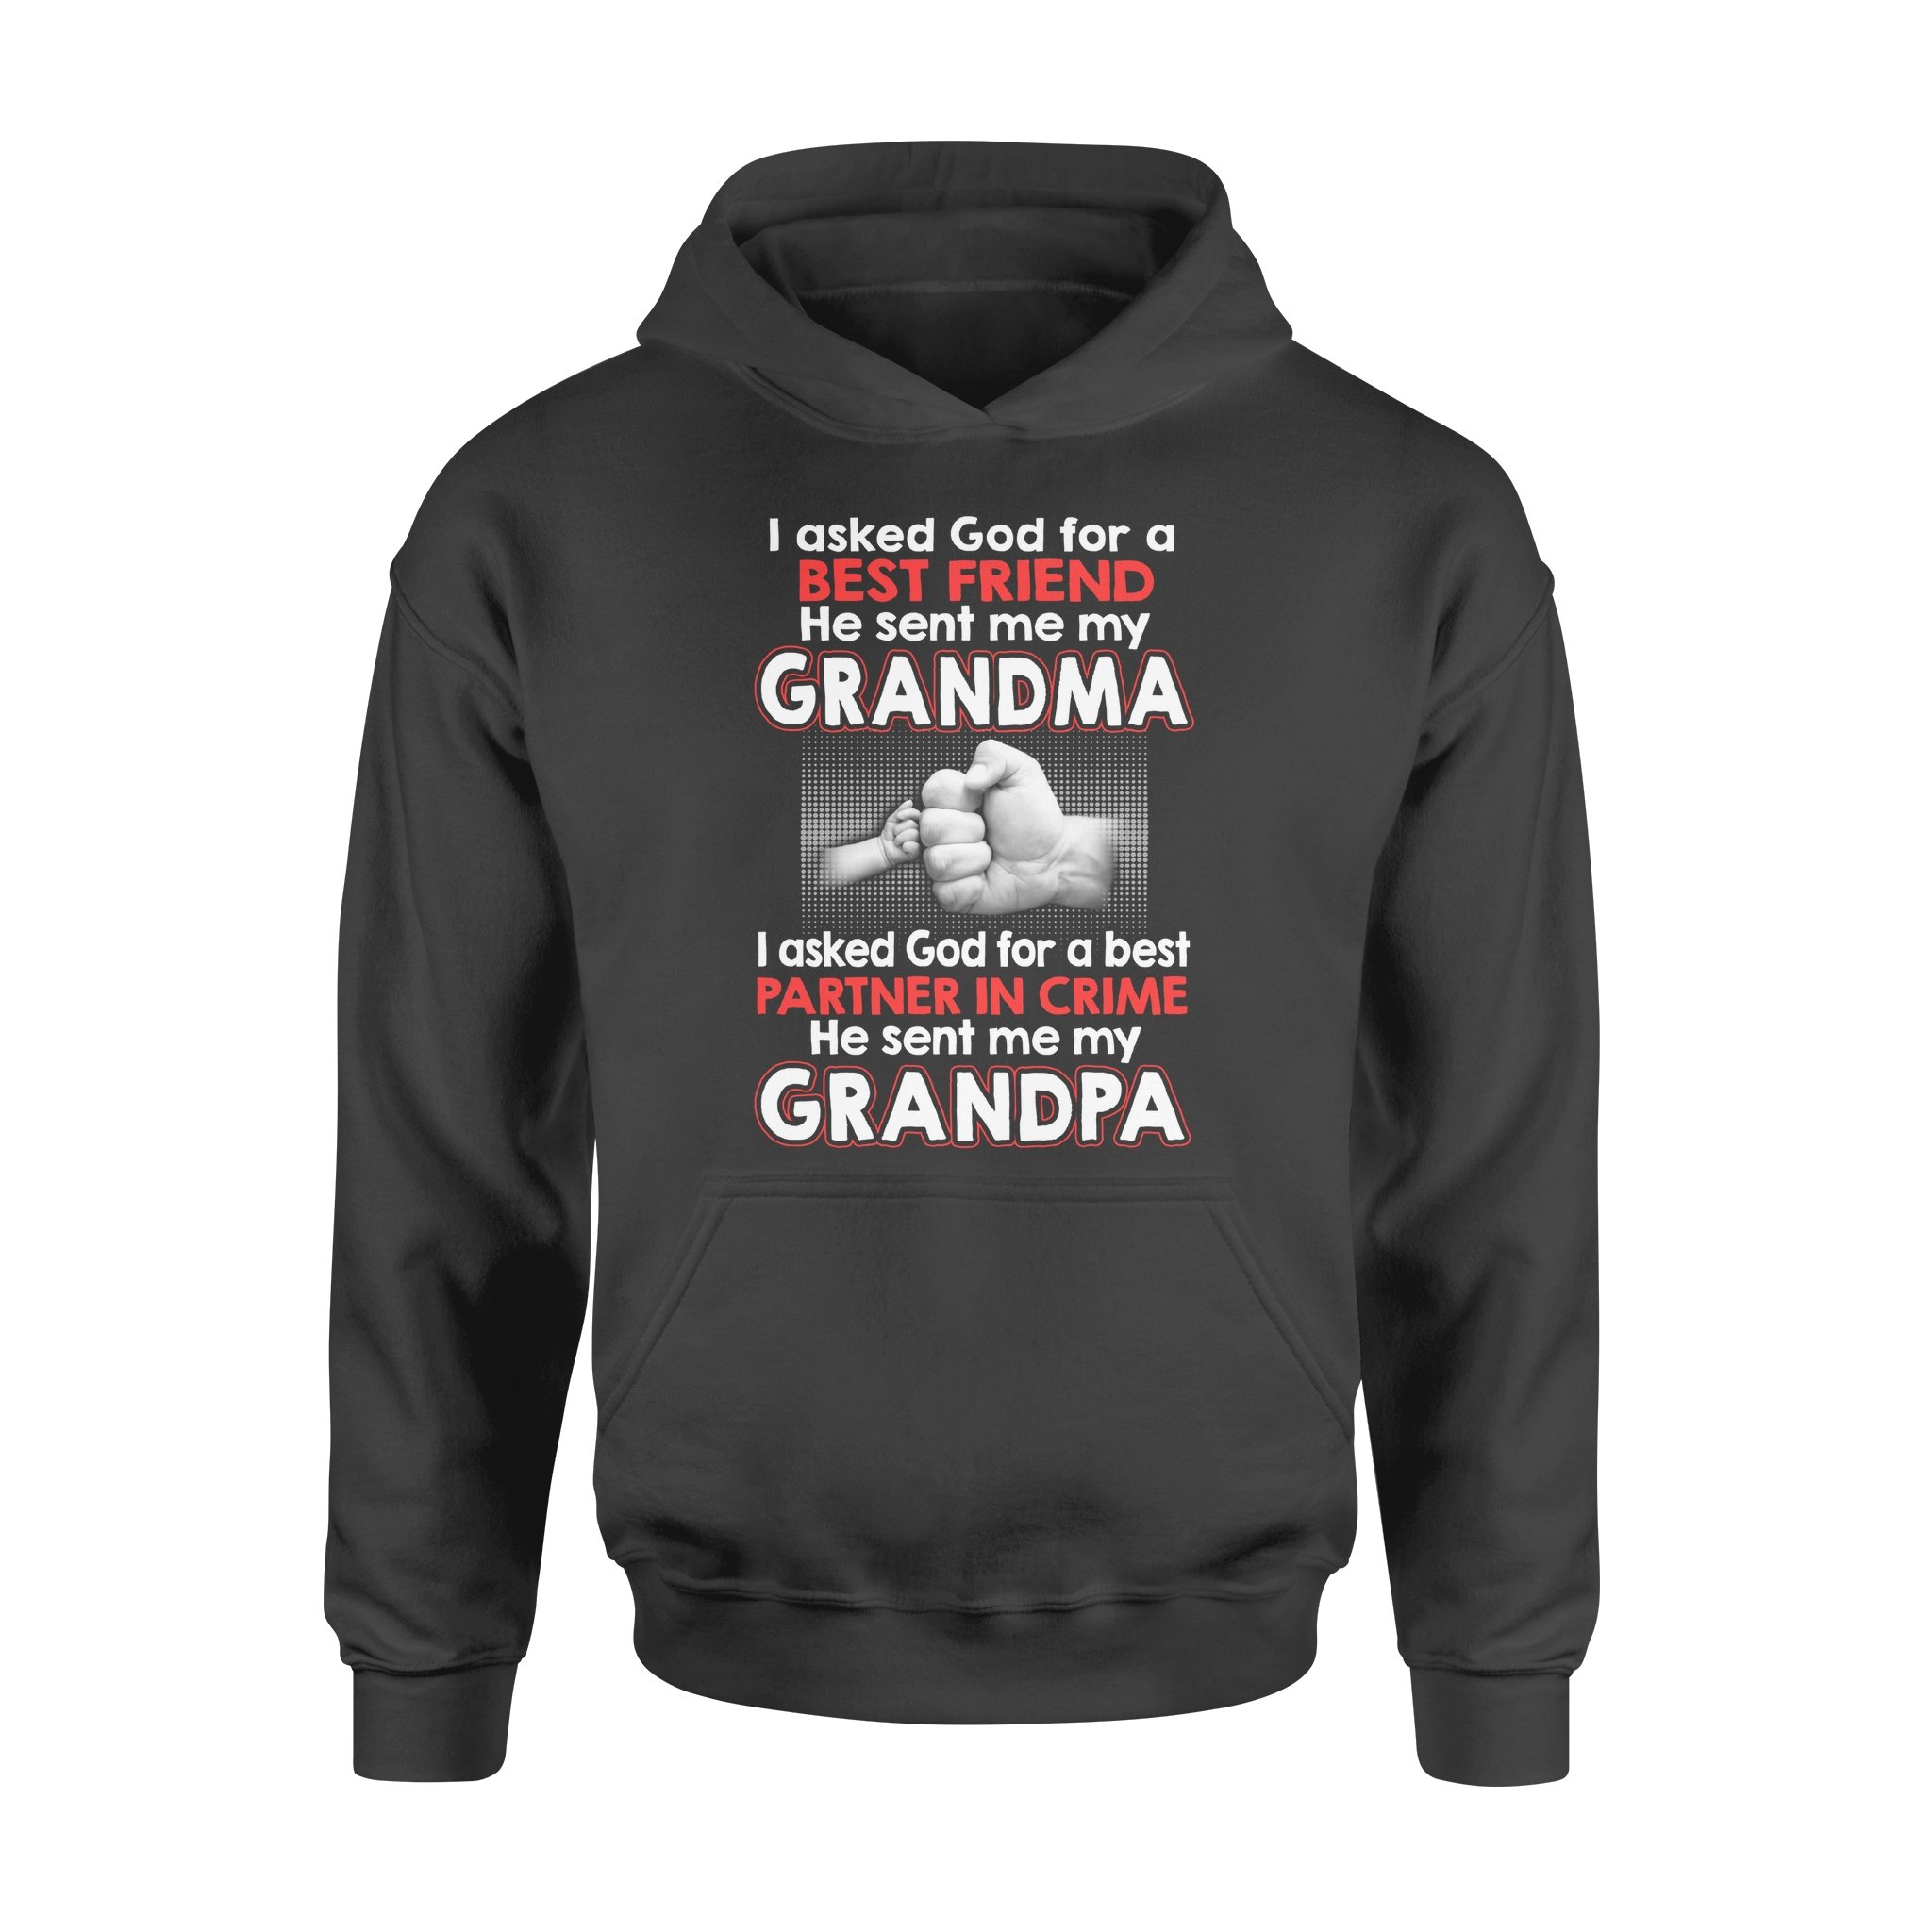 Grandpa Hoodie, Partner in Crime Hoodie, Best Hoodie, Plus size hoodie for grandpa, Black hoodie